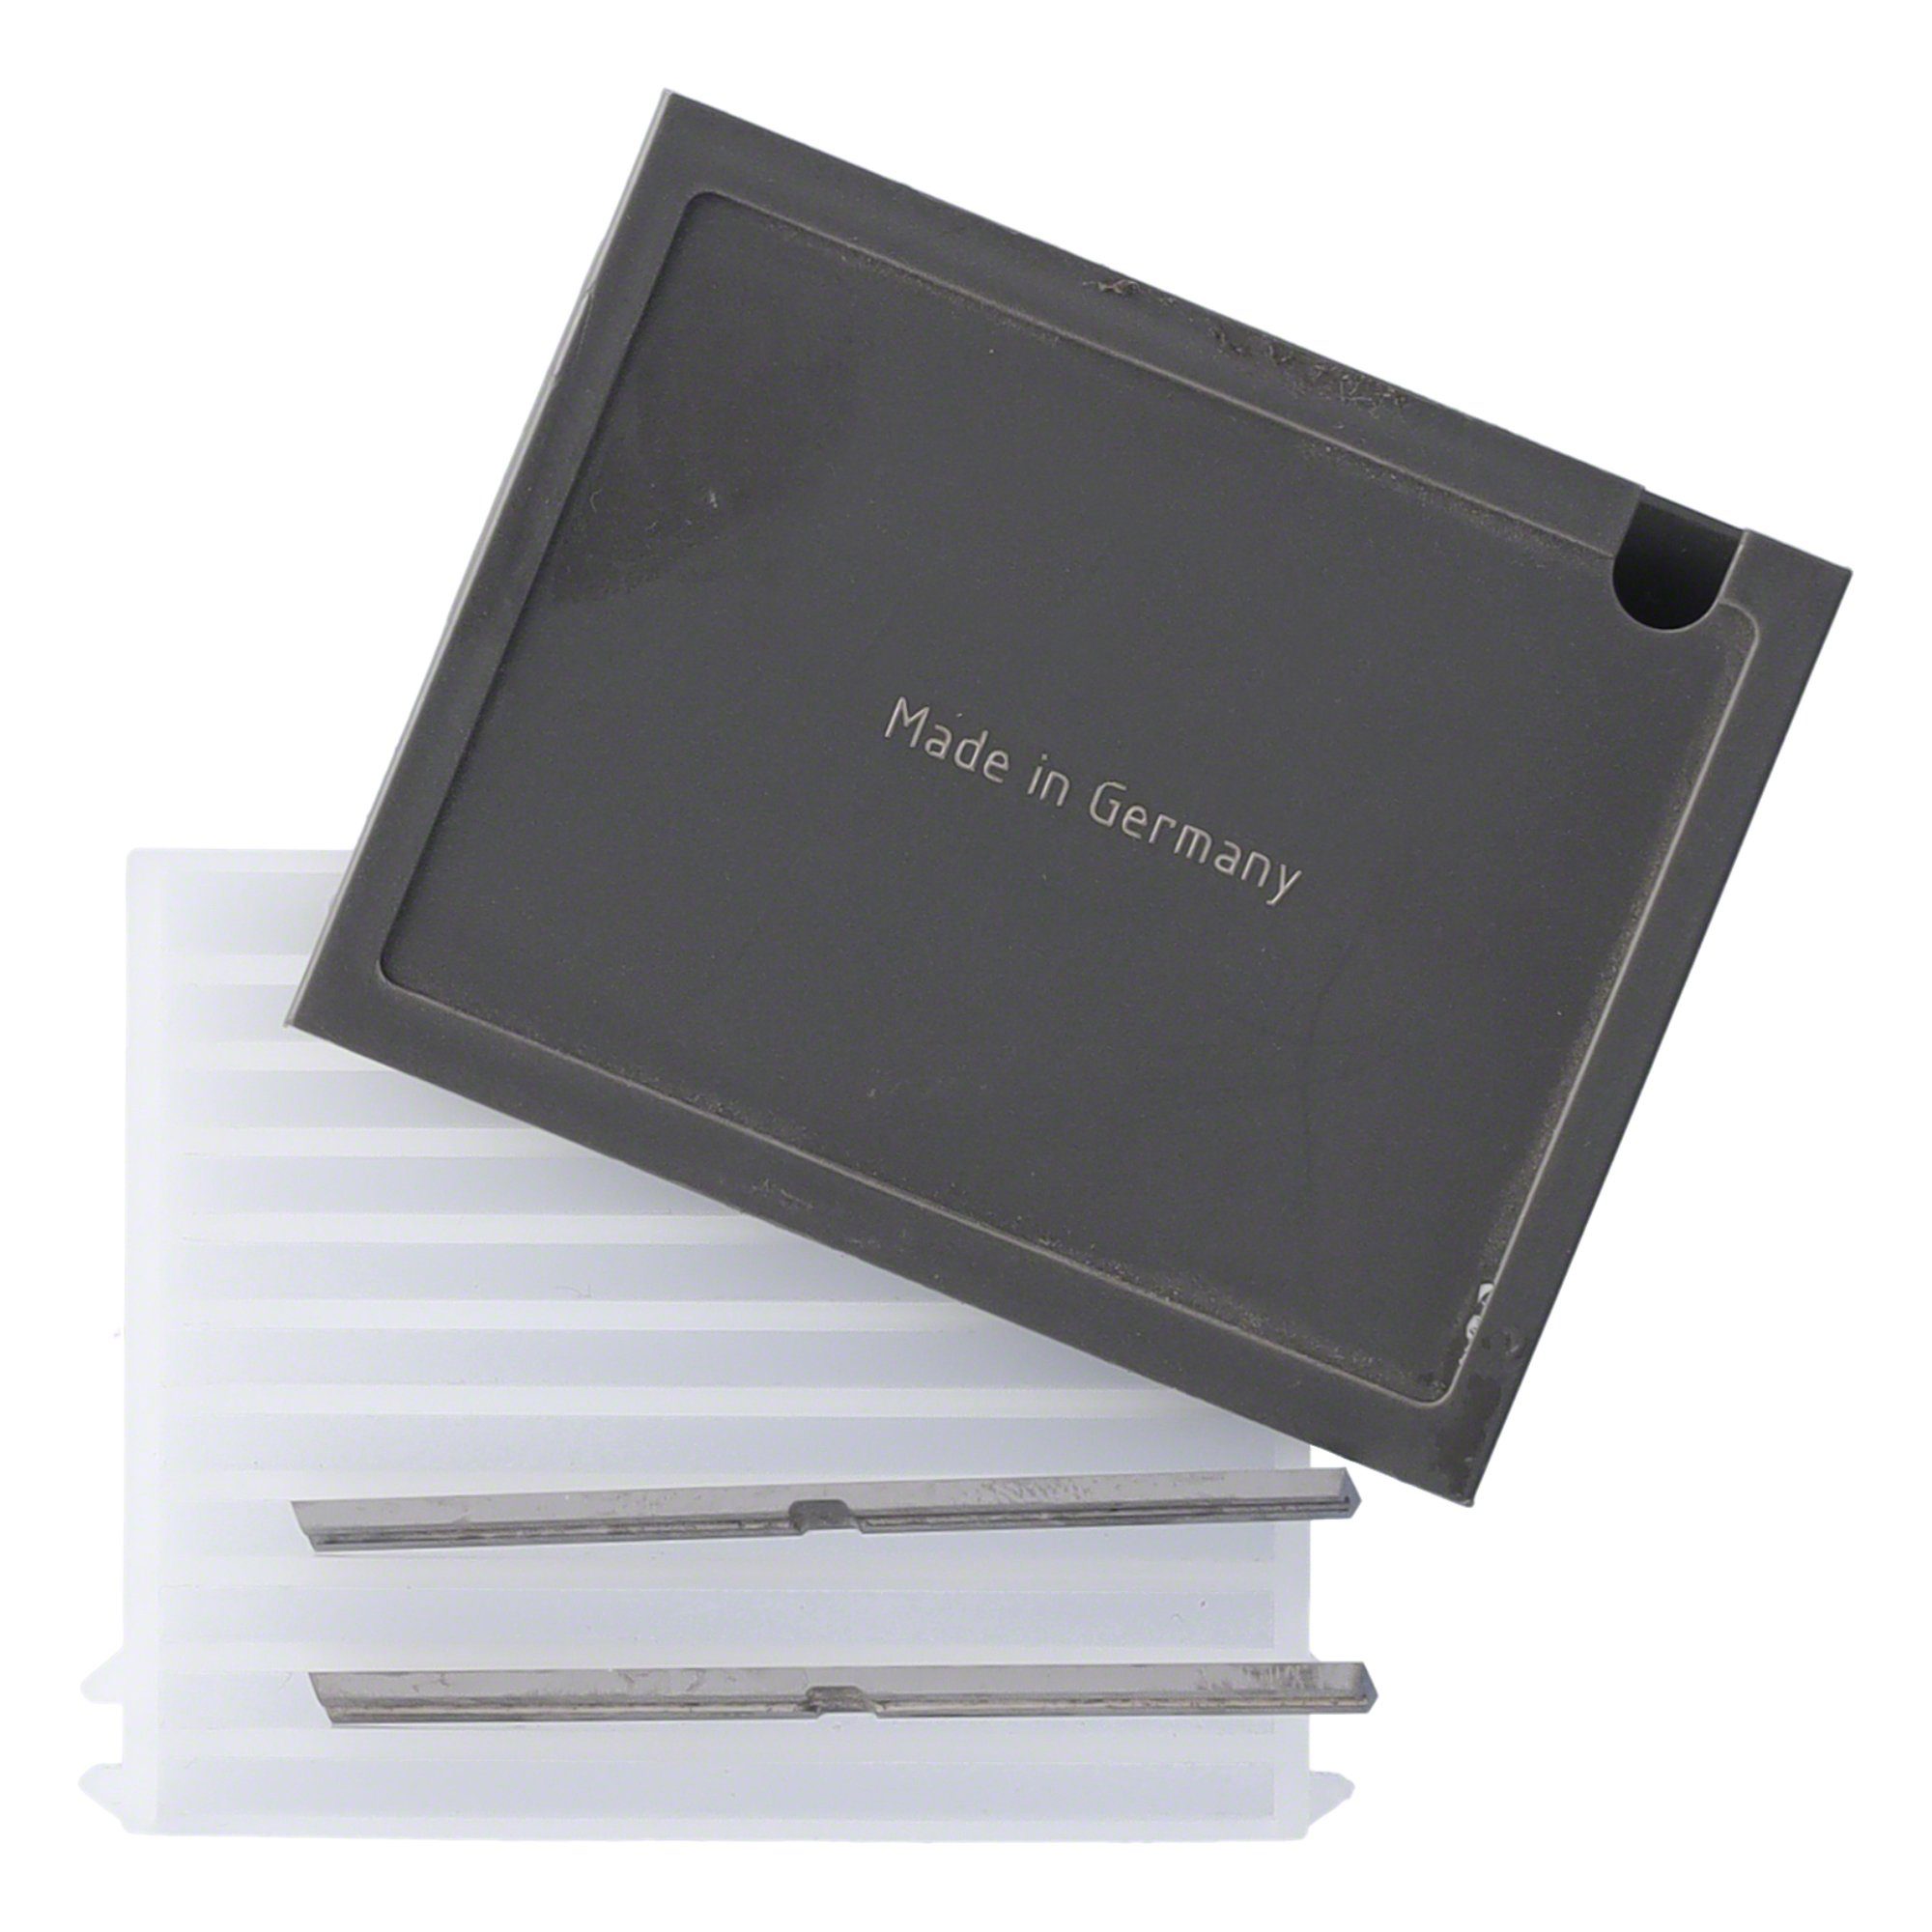 Tigra Wendeplattenfräser Mini-Wendeplatte 38 Brust 10 T04F Quernut 20x5,5x1,1mm und - St